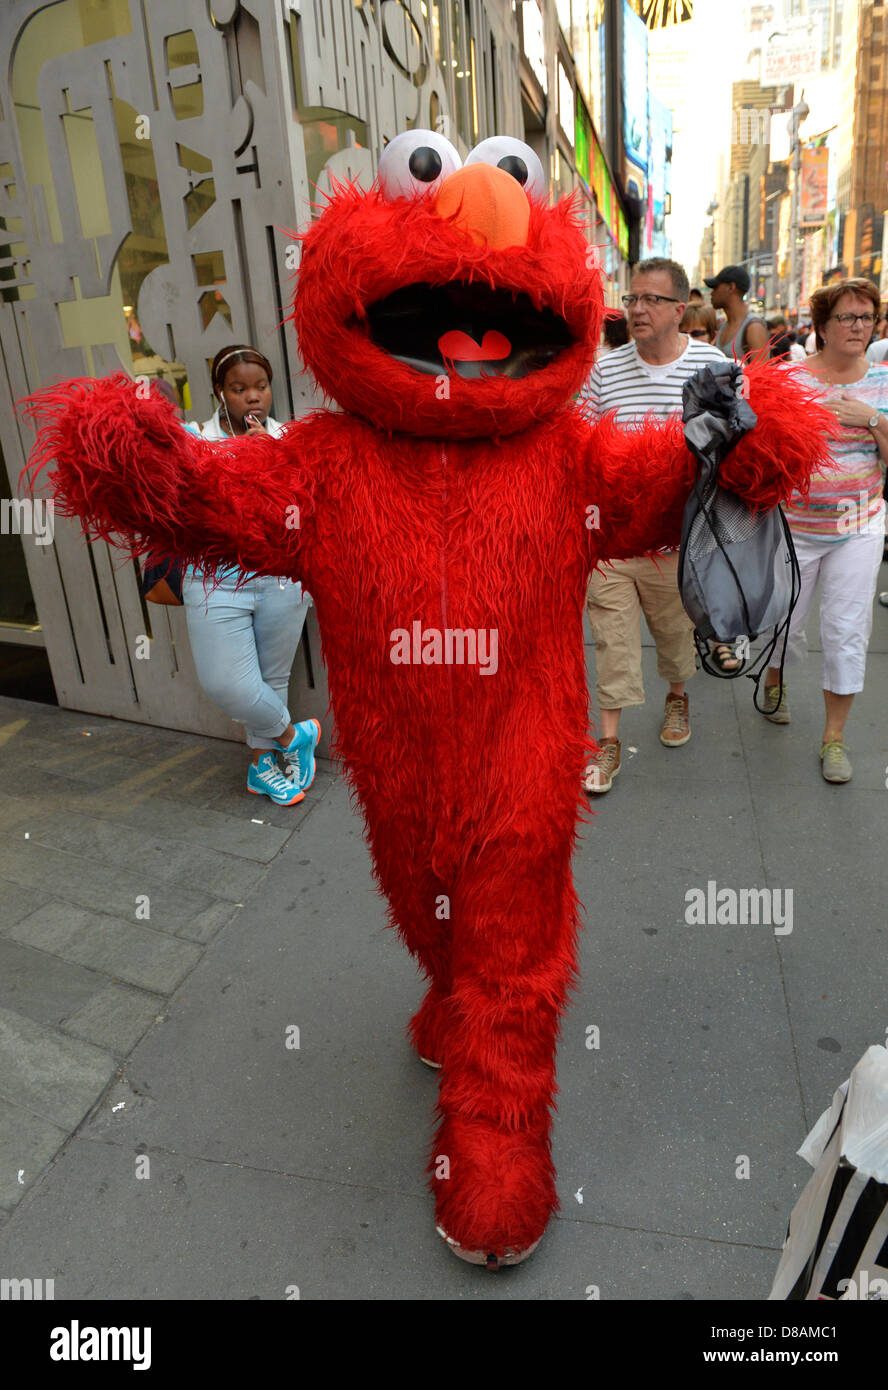 New York, USA. 21. Mai 2013. Eine Person, die in einem roten Elmo Kostüm  des Zeichens Sesamstraße geht an der 7th Avenue in Manhattan. Bildnachweis:  Ann E Parry / Alamy Live News Stockfotografie - Alamy